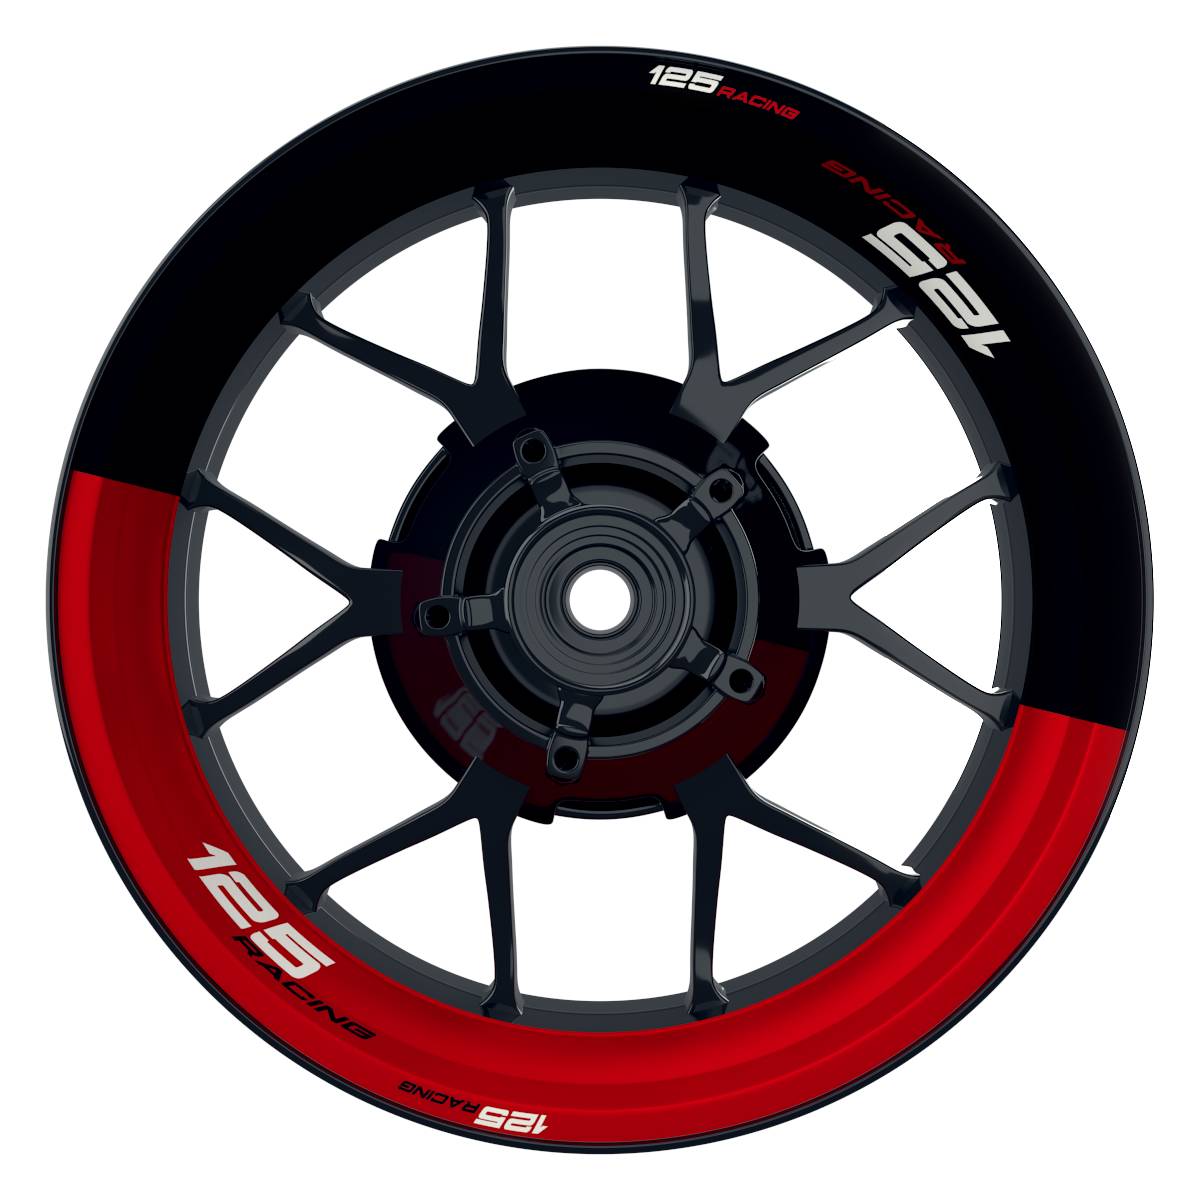 KTM 125RACING Halb halb schwarz rot Wheelsticker Felgenaufkleber